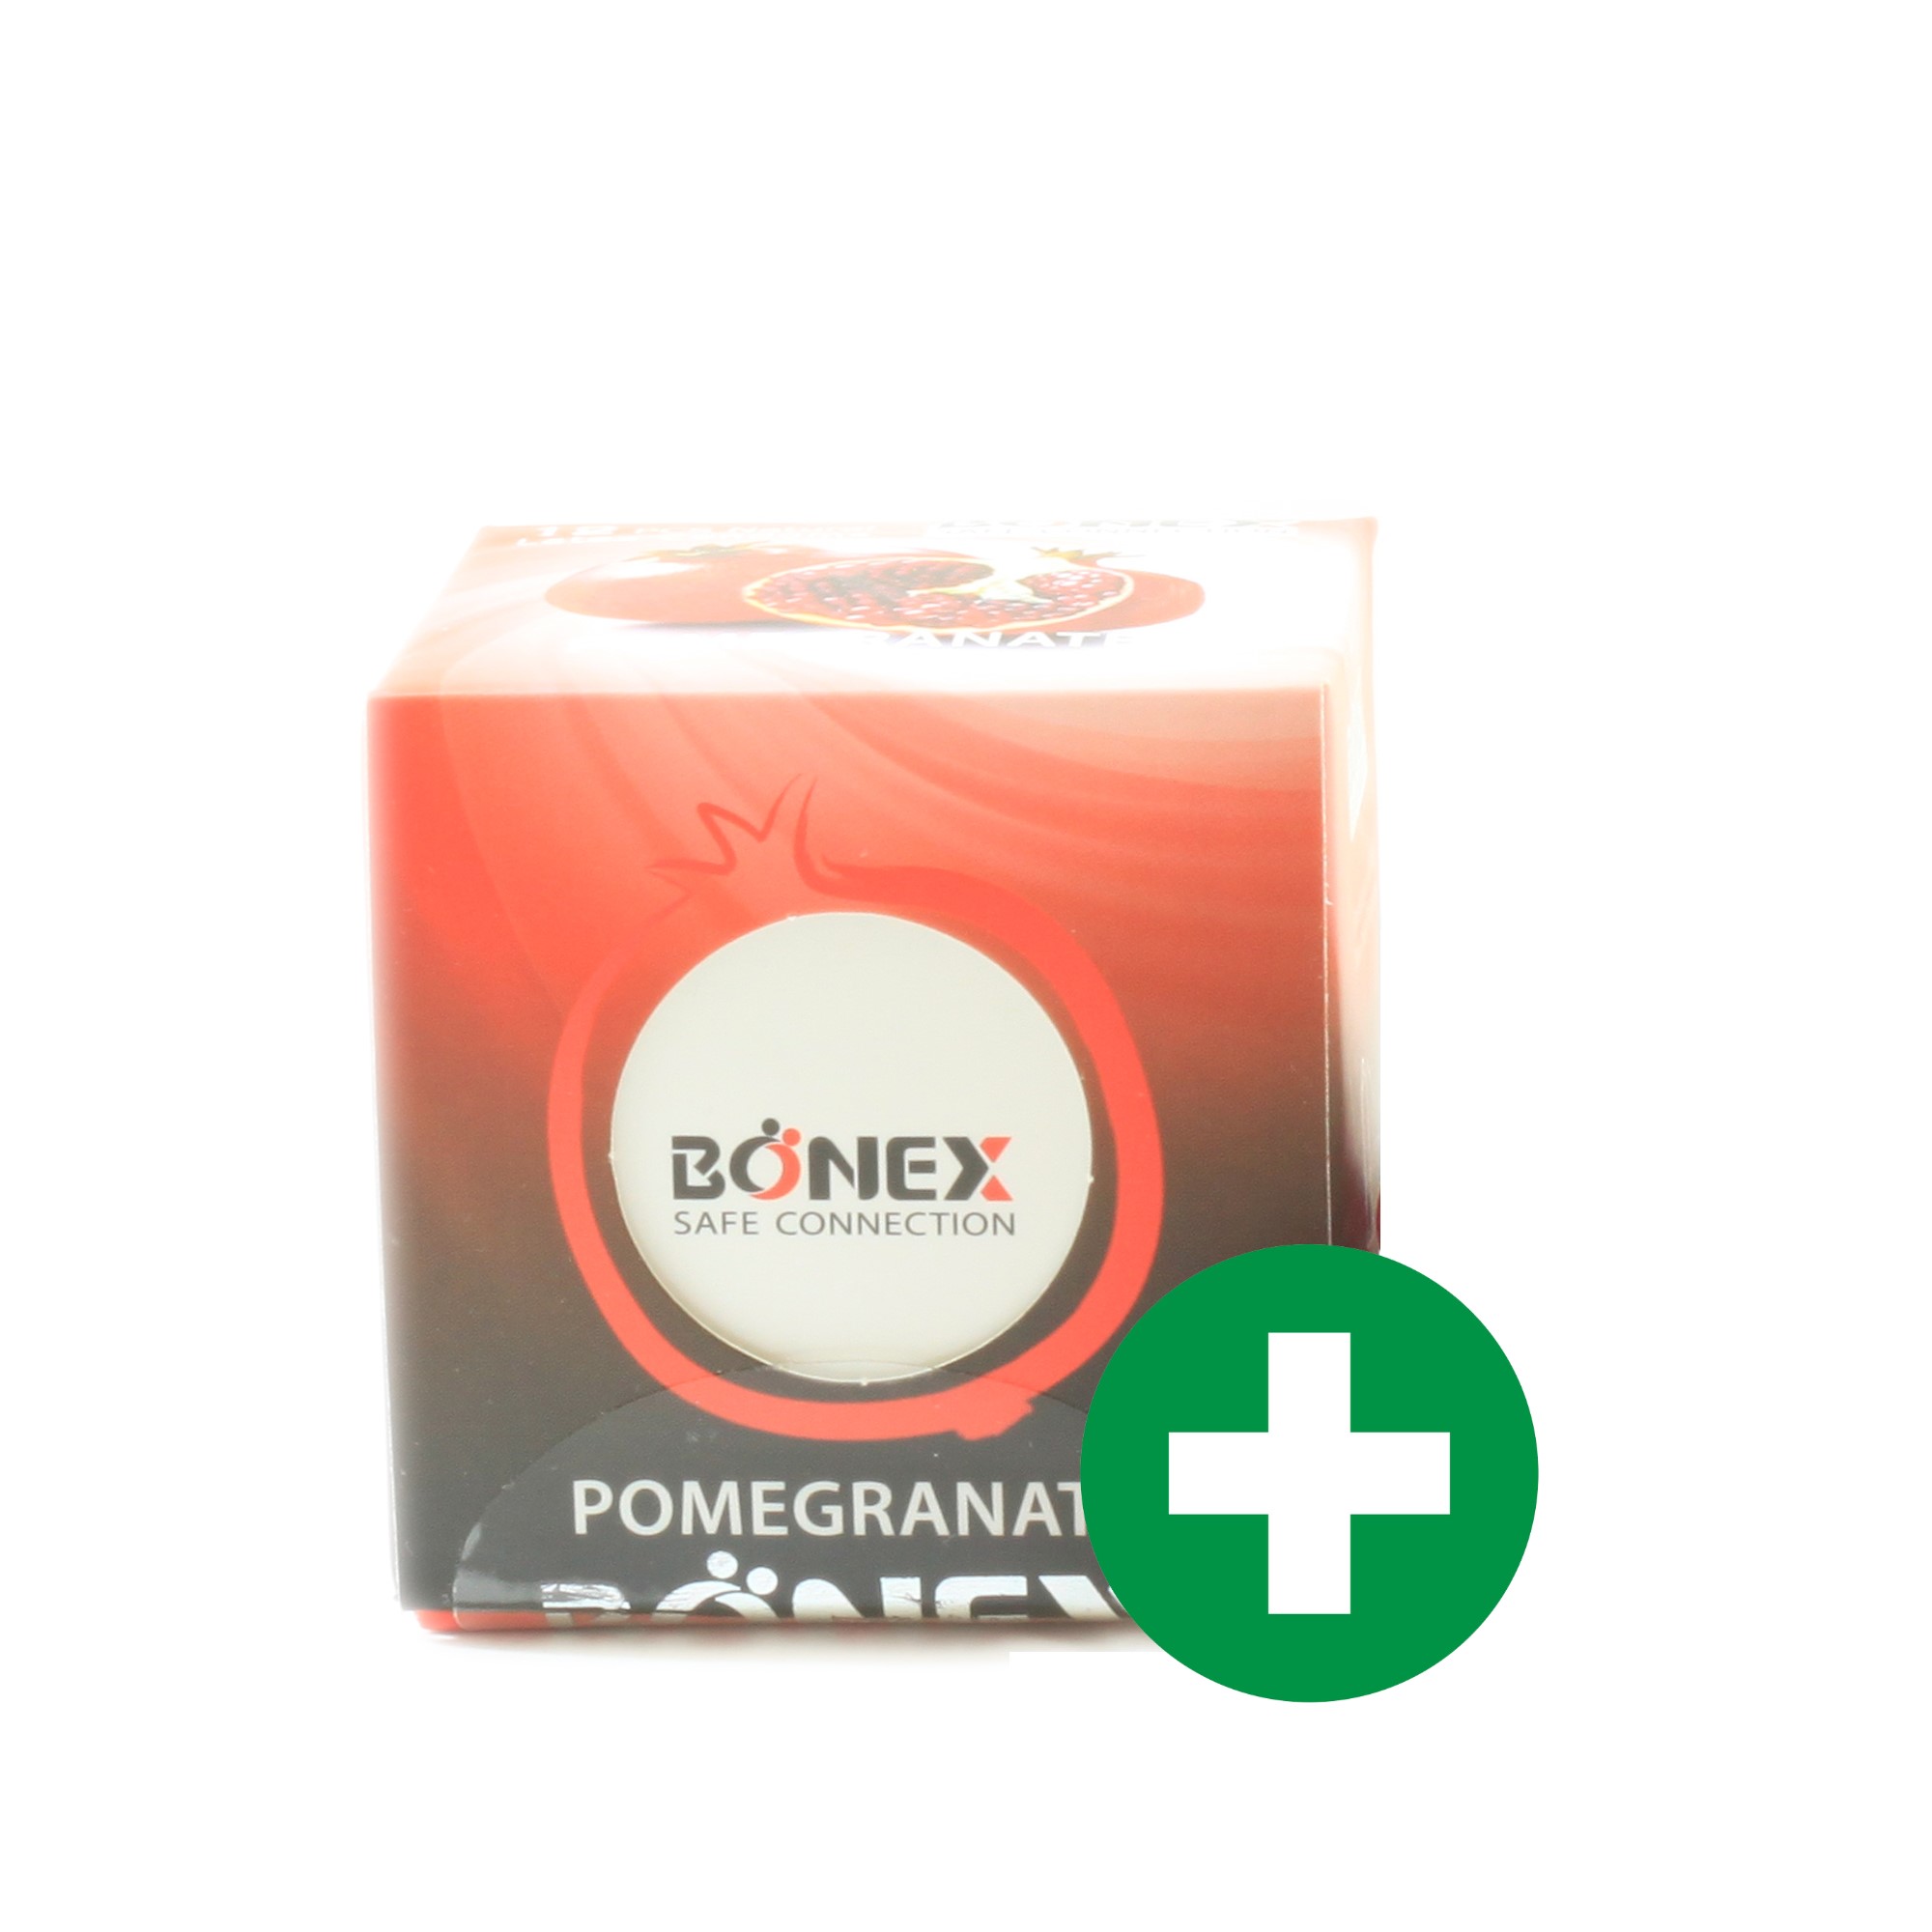 کاندوم مدل Pomegranate بونکس